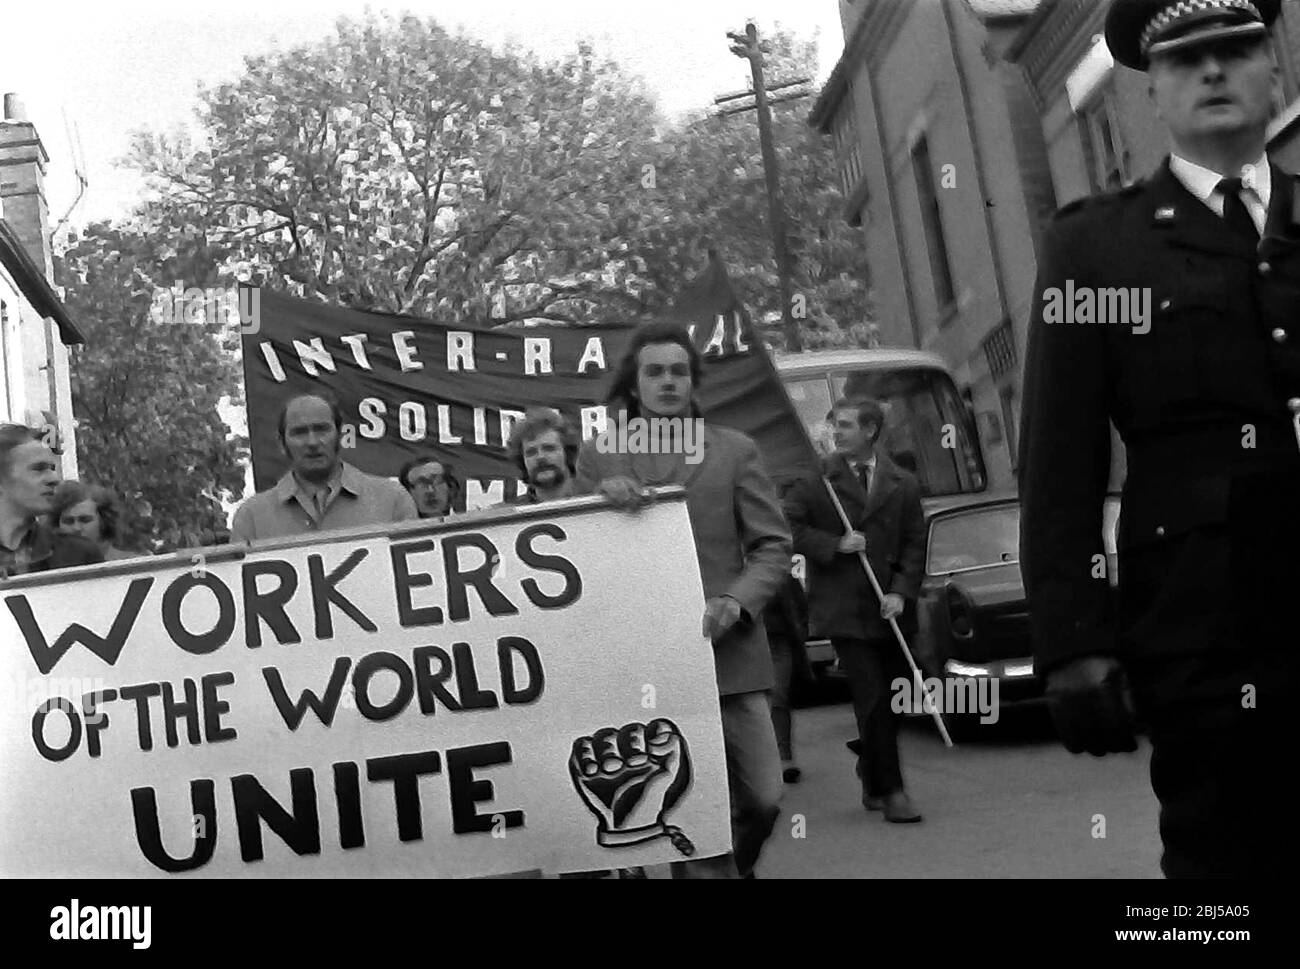 Des manifestants portant des banderoles, dont une qui dit: 'Worker of the World Unite', prennent part à une manifestation contre le racisme à Leicester, Angleterre, Royaume-Uni, Iles britanniques, en 1972. Banque D'Images